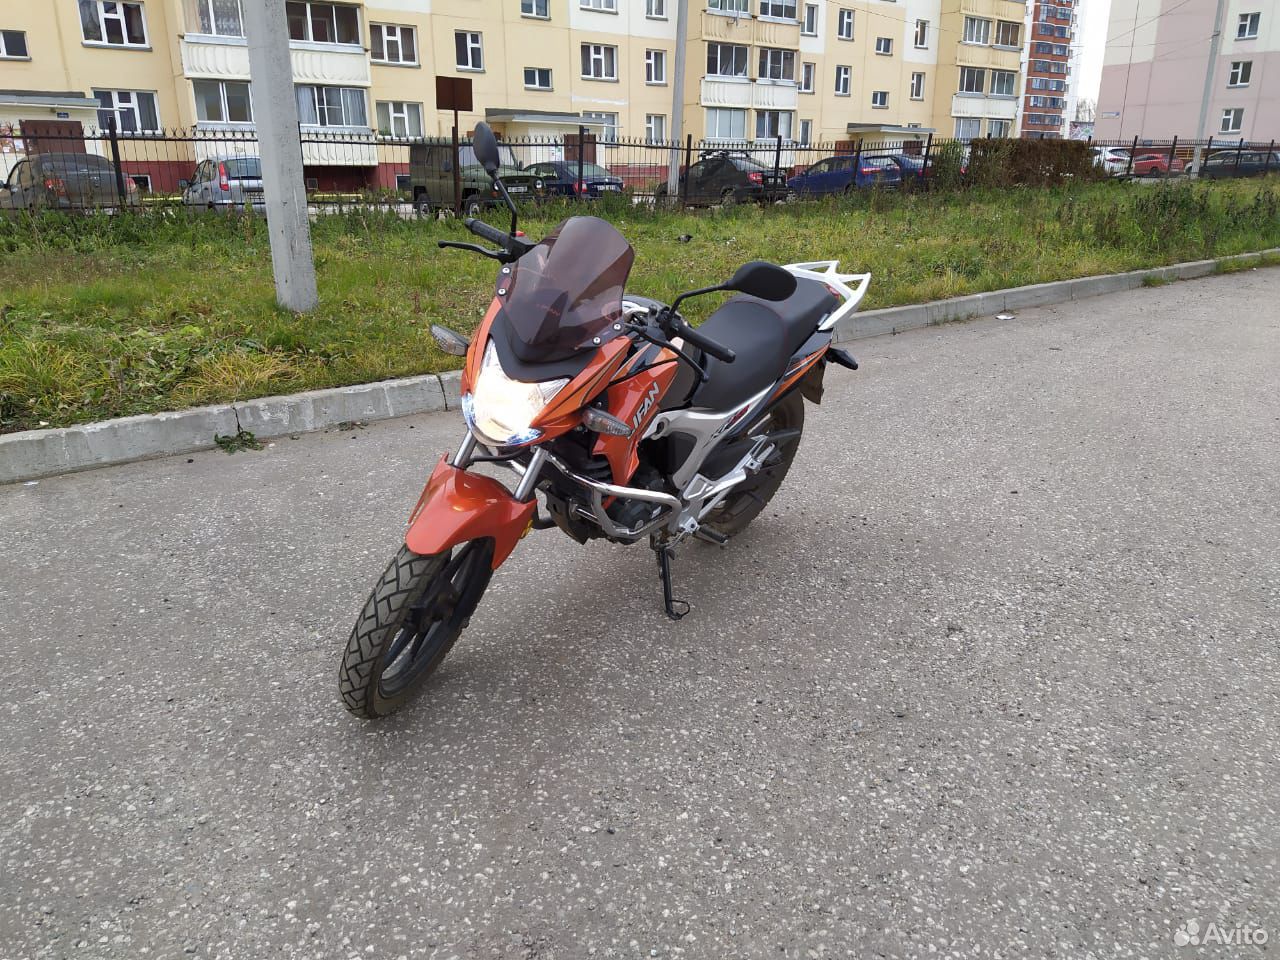  Мотоцикл lifan kp-150  89097165288 купить 8